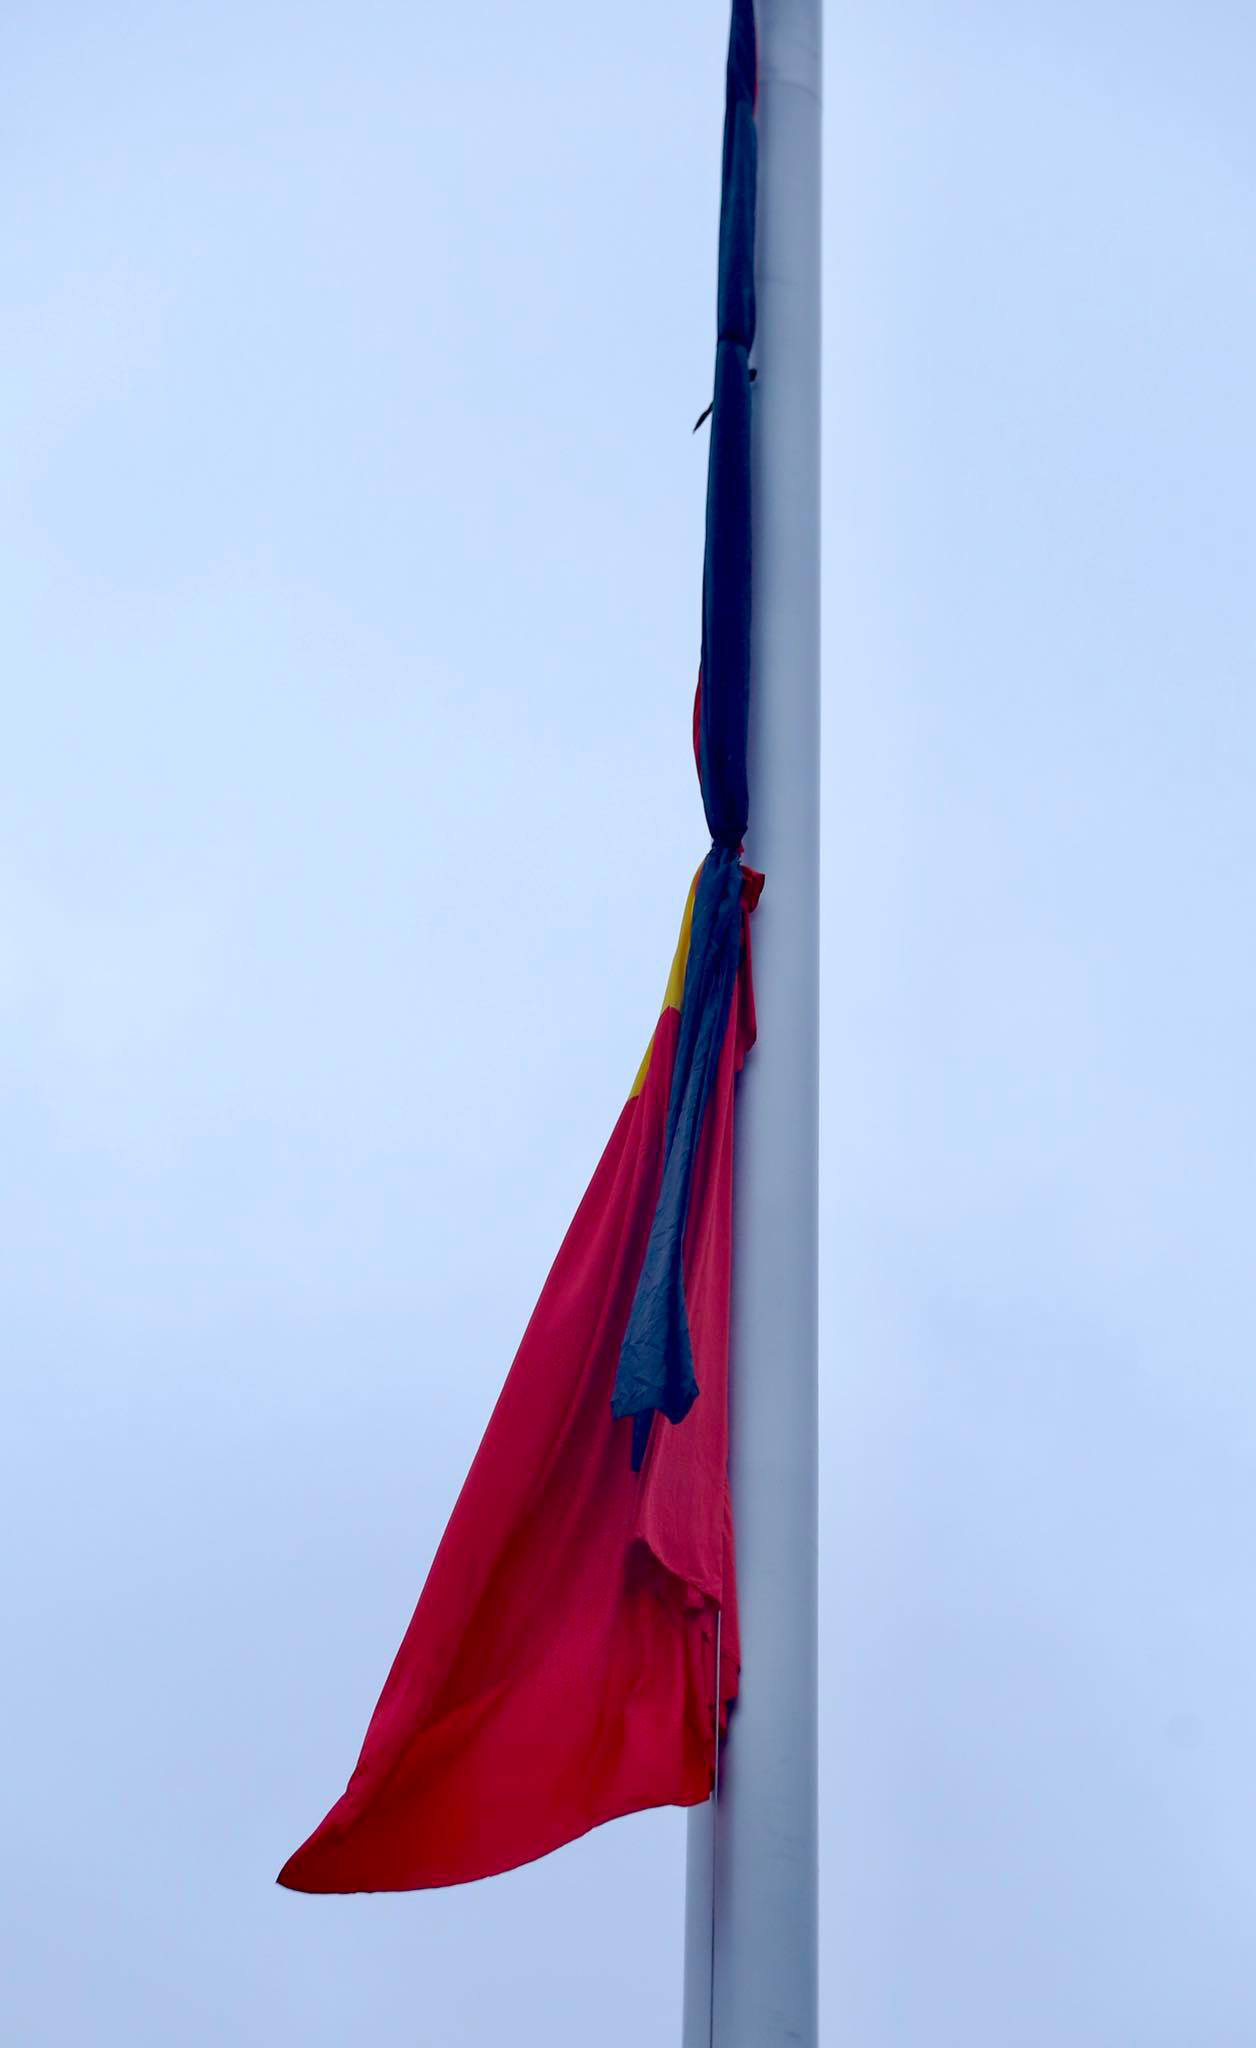 Lễ treo cờ rủ Quốc tang năm 2024
Năm 2024, cờ rủ Việt Nam sẽ được treo trong các đám tang lớn cho người lãnh đạo lớn của đất nước. Với dụng cụ treo cờ được sản xuất bởi các chuyên gia tay nghề hàng đầu, cờ rủ sẽ được đặt trên tất cả các tang lễ quan trọng, tôn lên giá trị của lãnh đạo của chúng ta. Đây cũng là cơ hội để mọi người tỏ lòng biết ơn và tôn vinh sự hy sinh của các vị anh hùng.